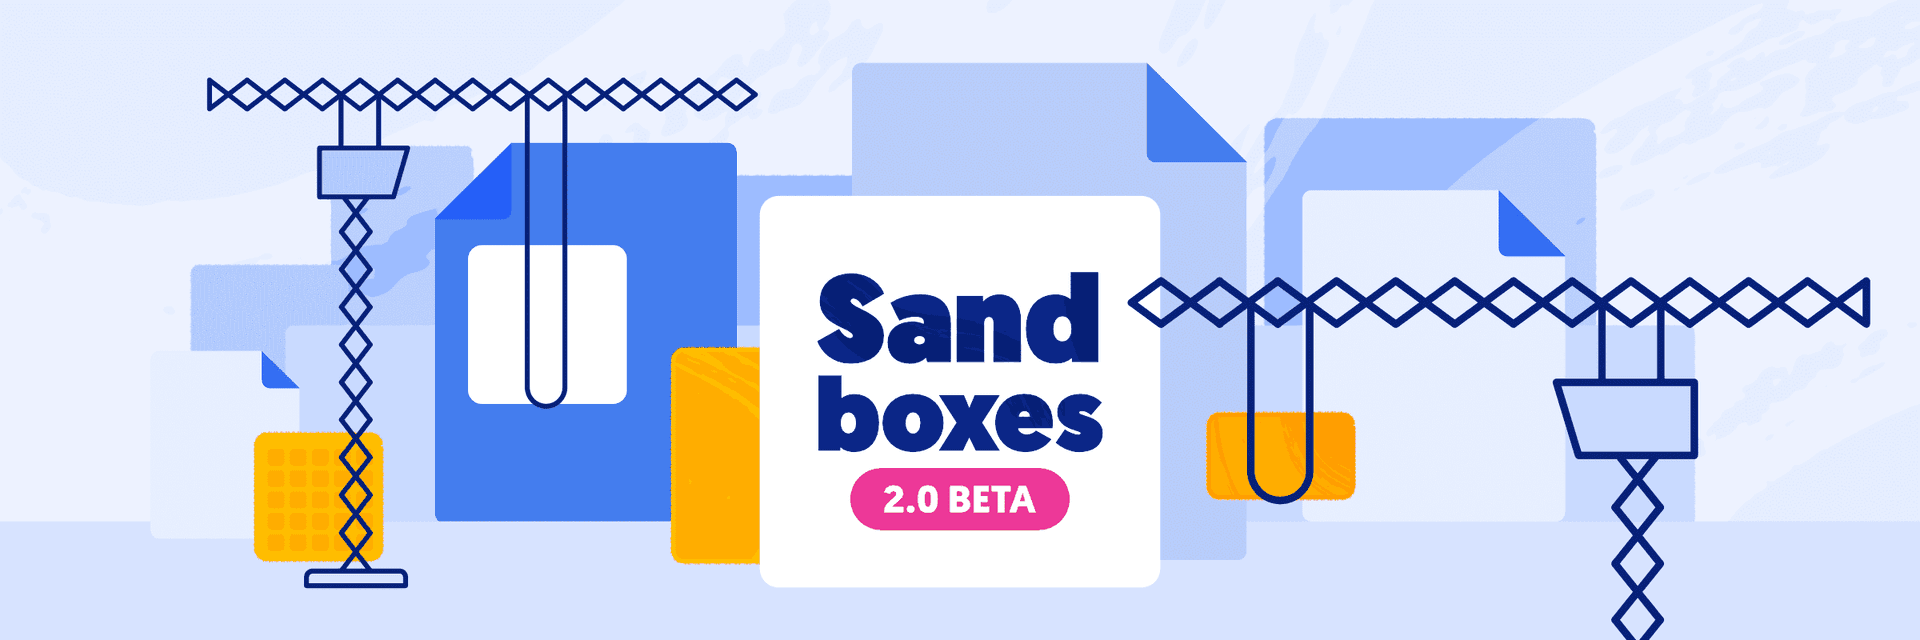 Sandboxes v2.0: Multiple port mapping & authorization